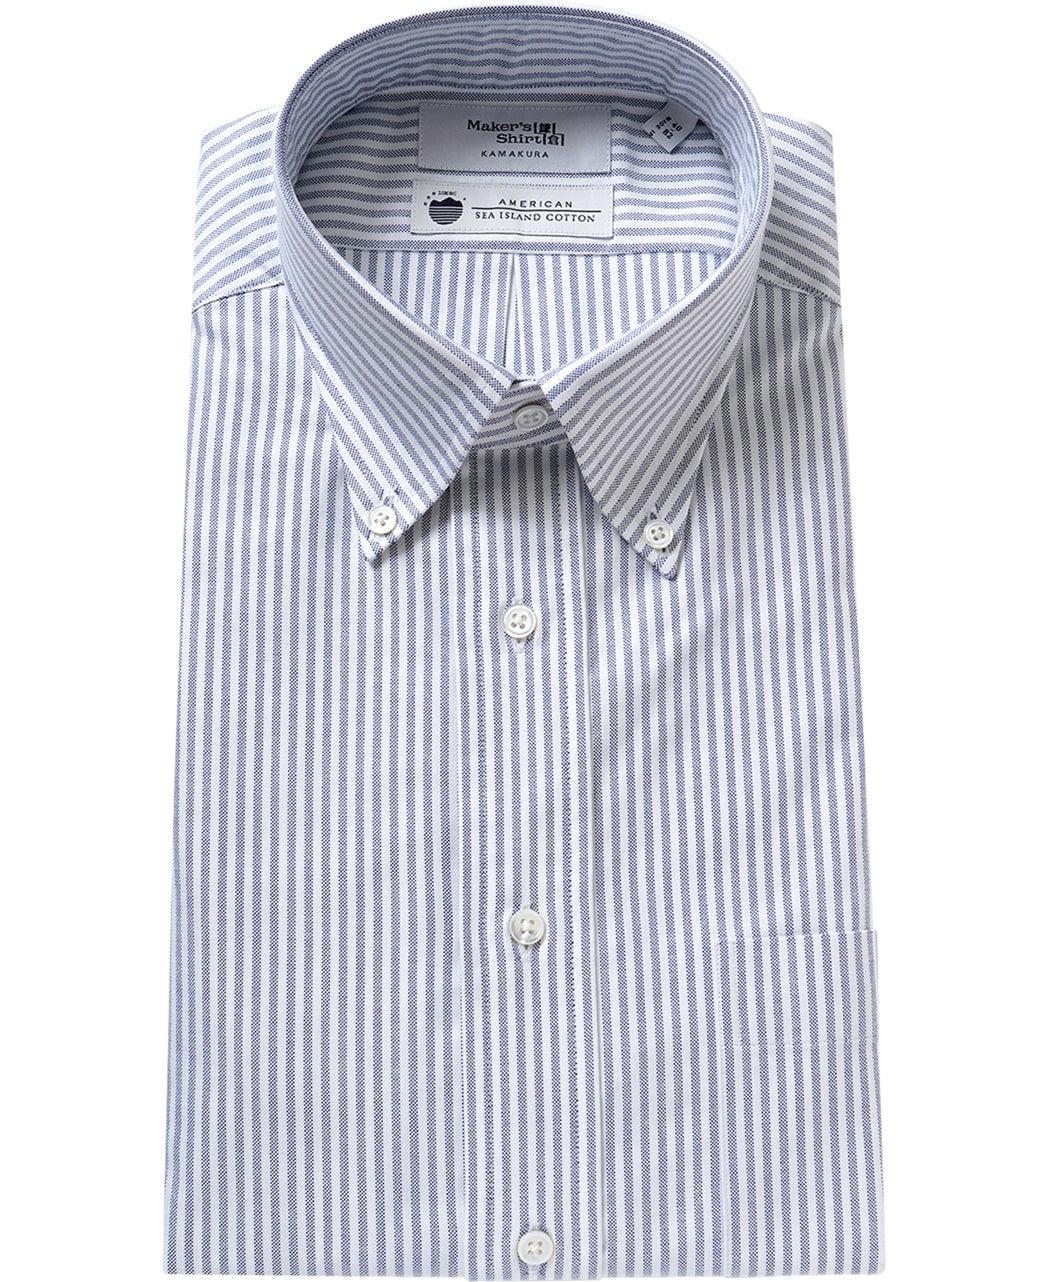 鎌倉シャツ メンズシャツ ストライプ | メーカーズシャツ鎌倉 公式通販